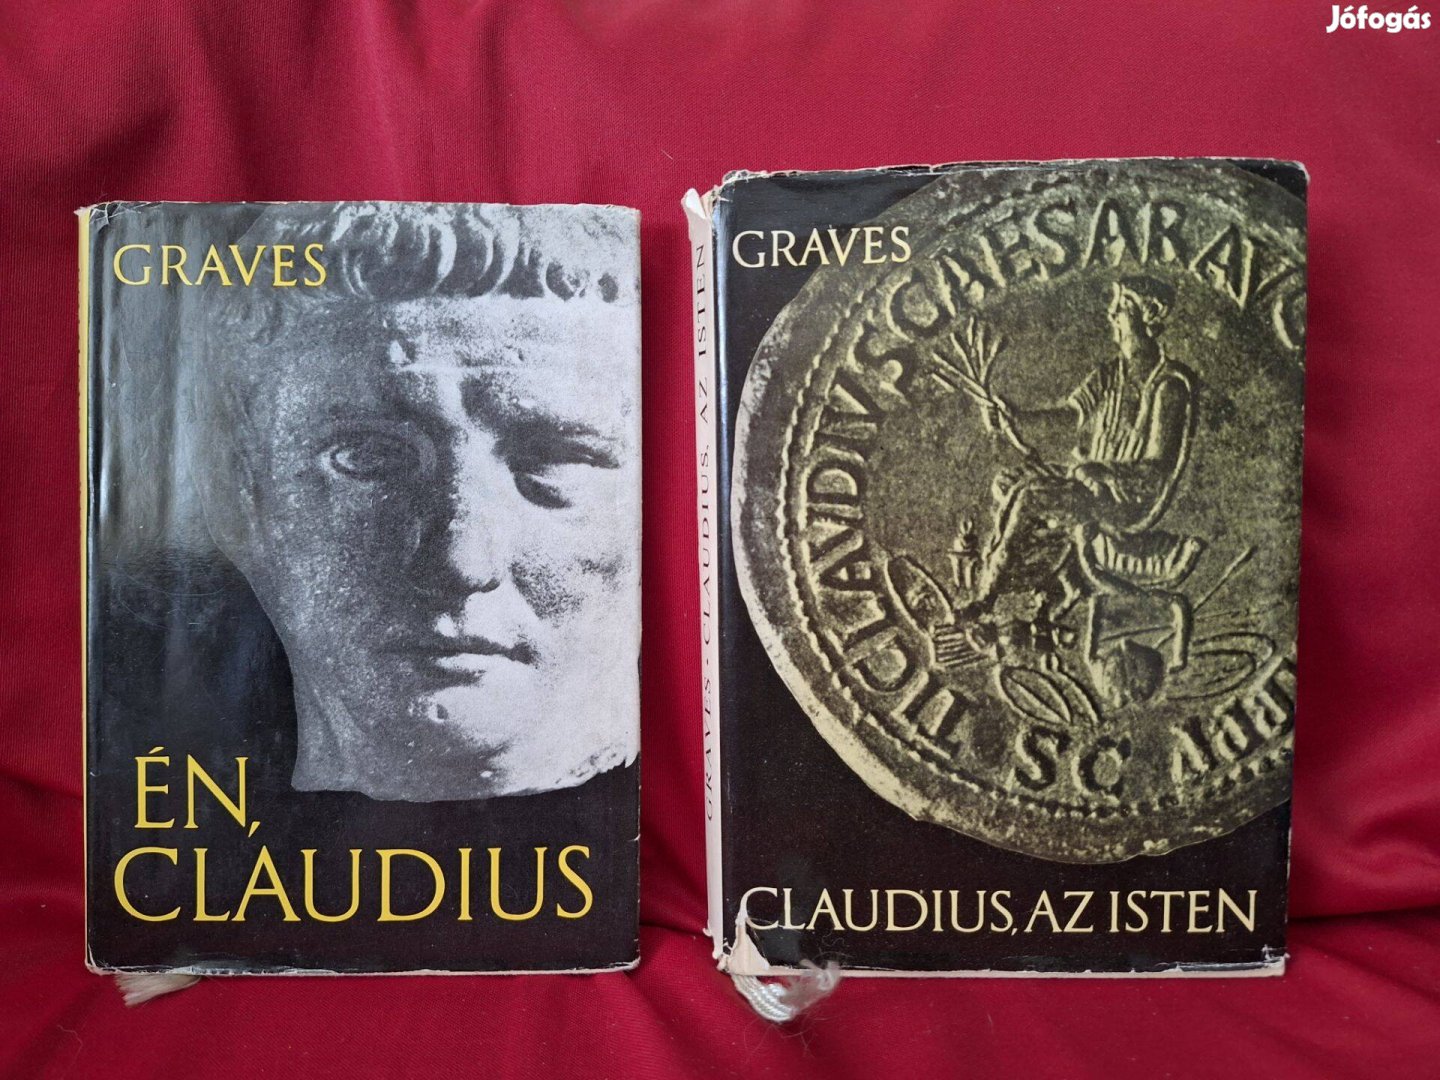 Robert Graves : Claudius , az Isten és felesége Messalina